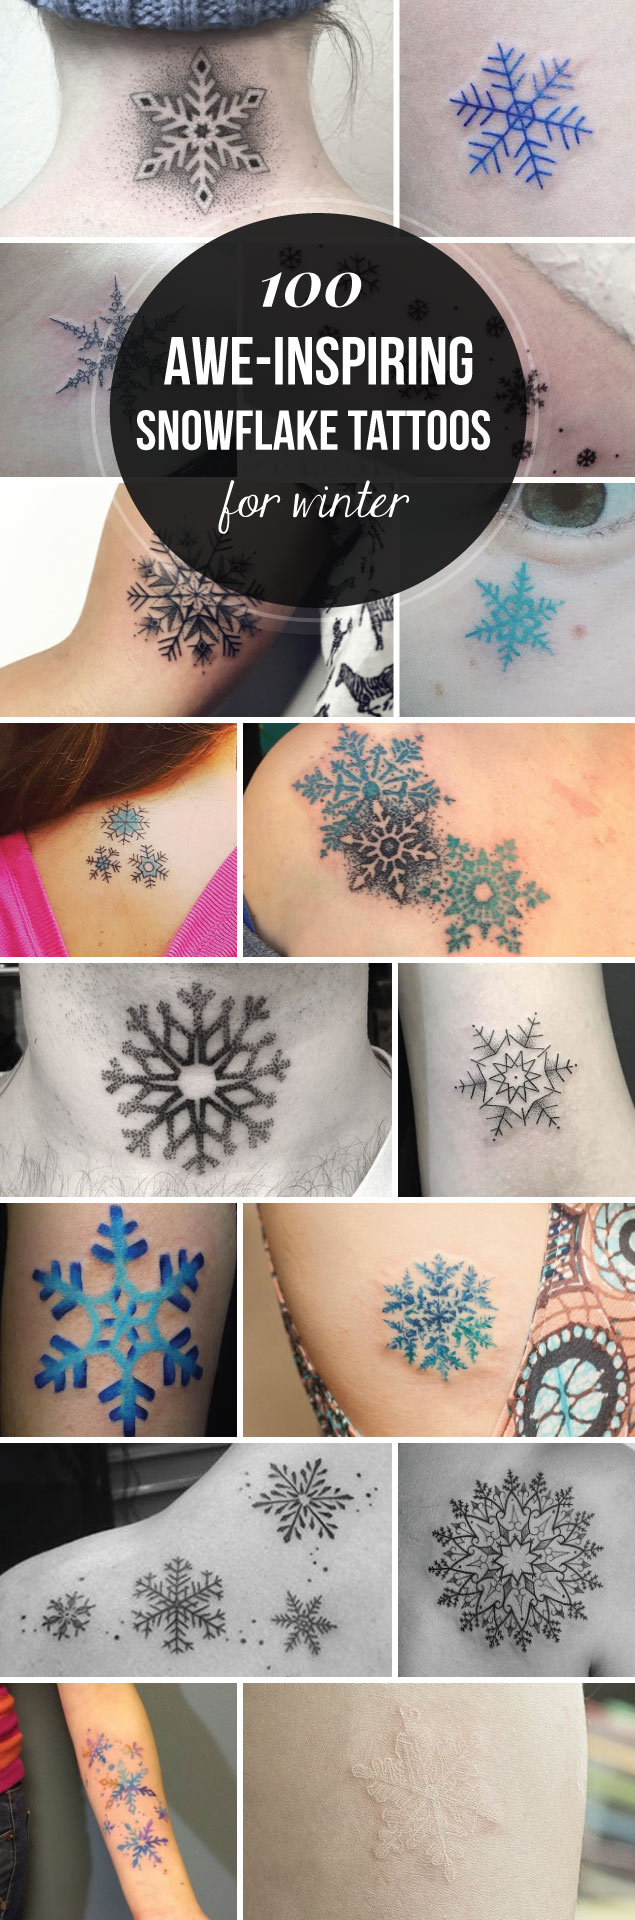 100 Awe-Inspiring Snowflake Tattoos for Winter | TattooBlend